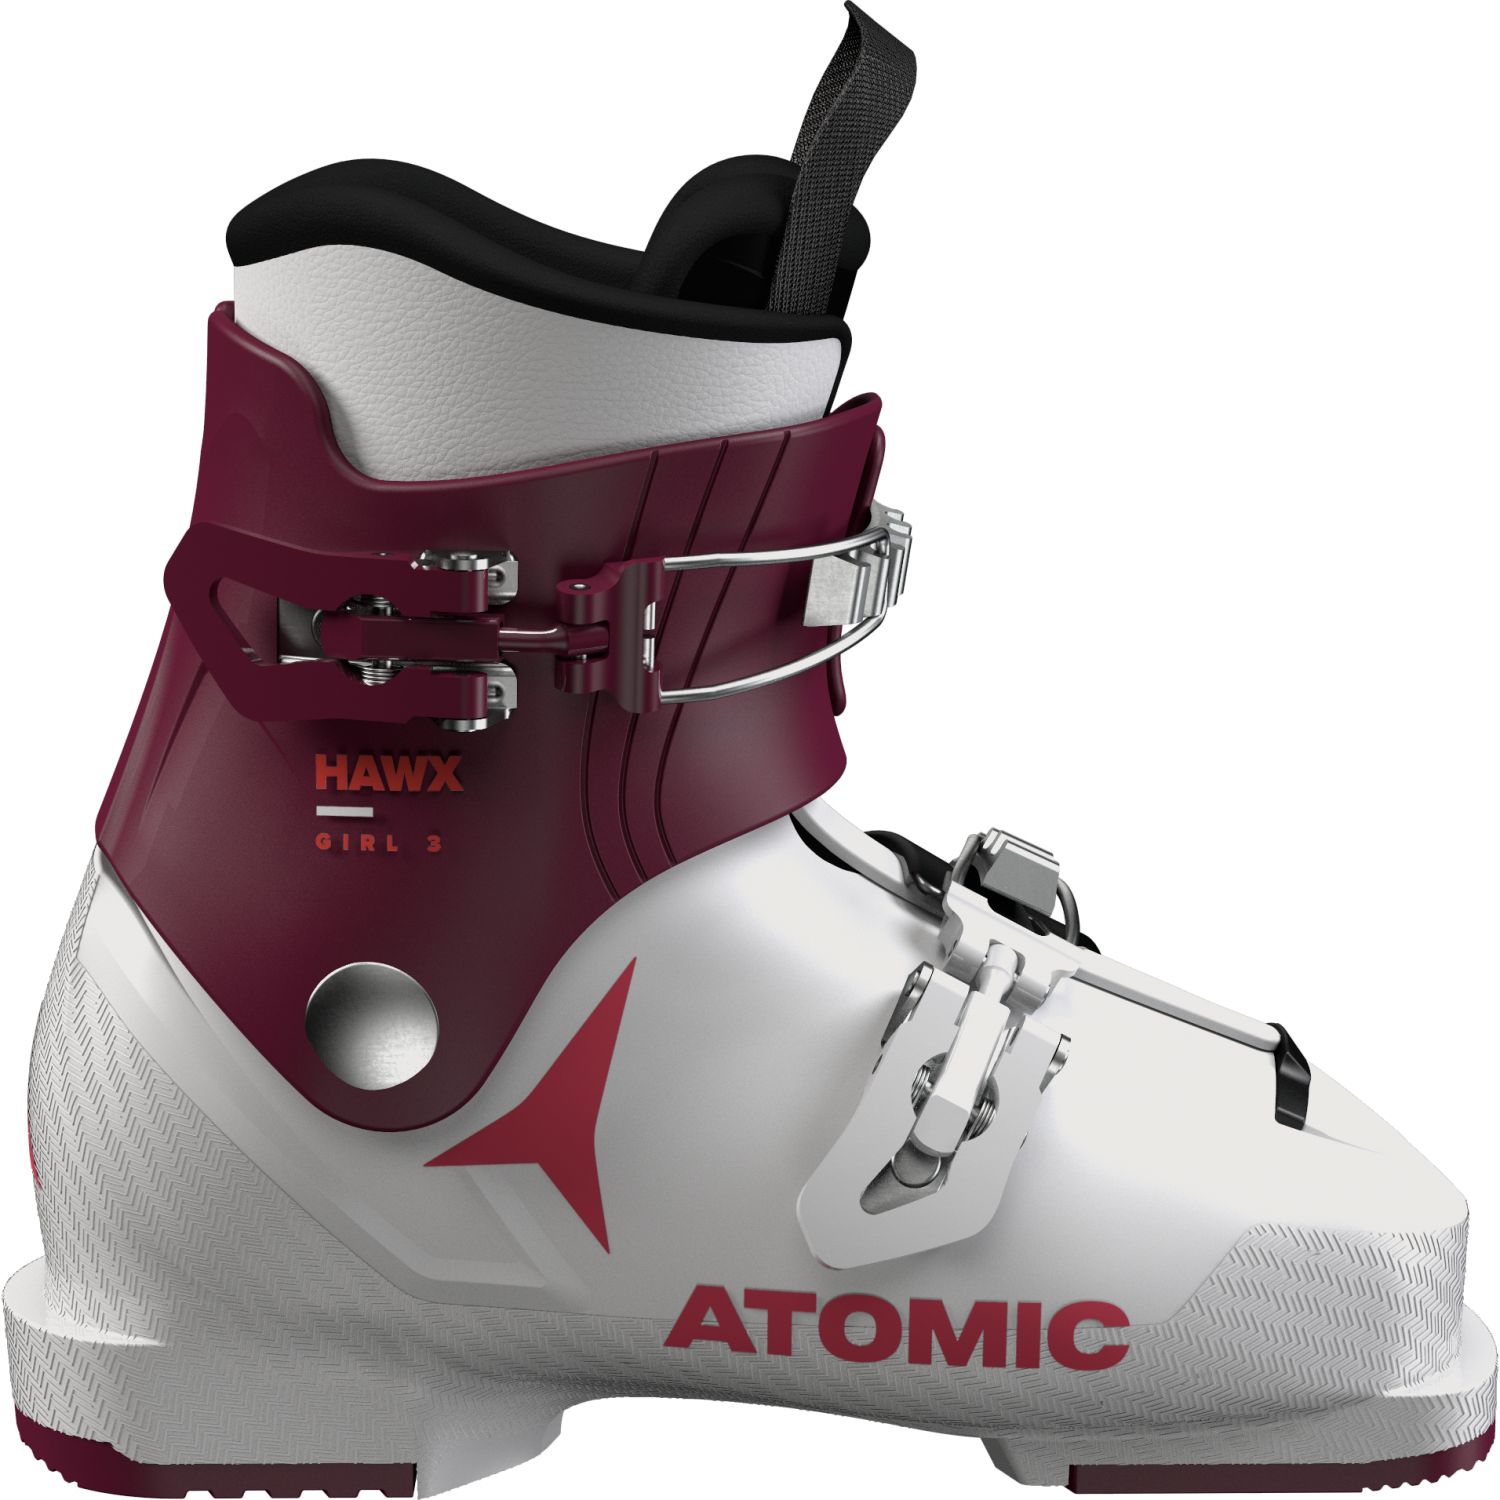 Atomic Hawx Girl 2, skistøvler, børn, hvid/lilla